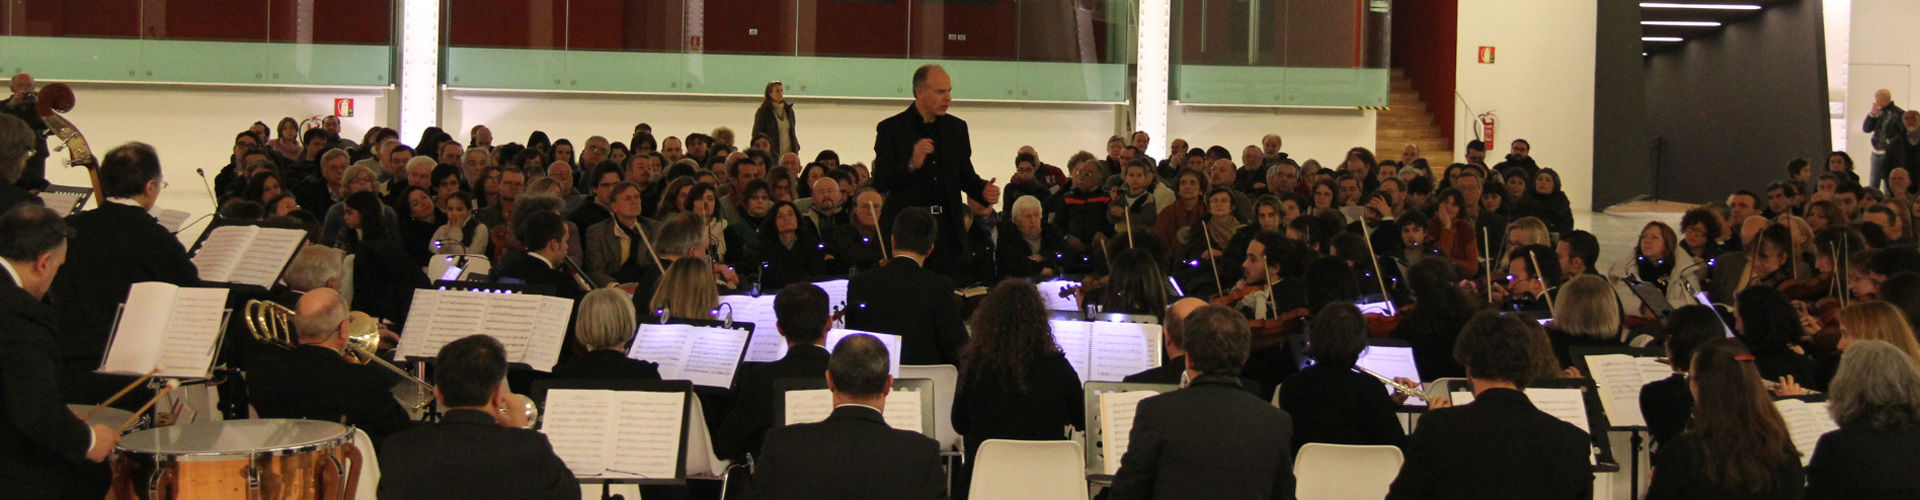 Orchestra Carisch and Massimo Quarta